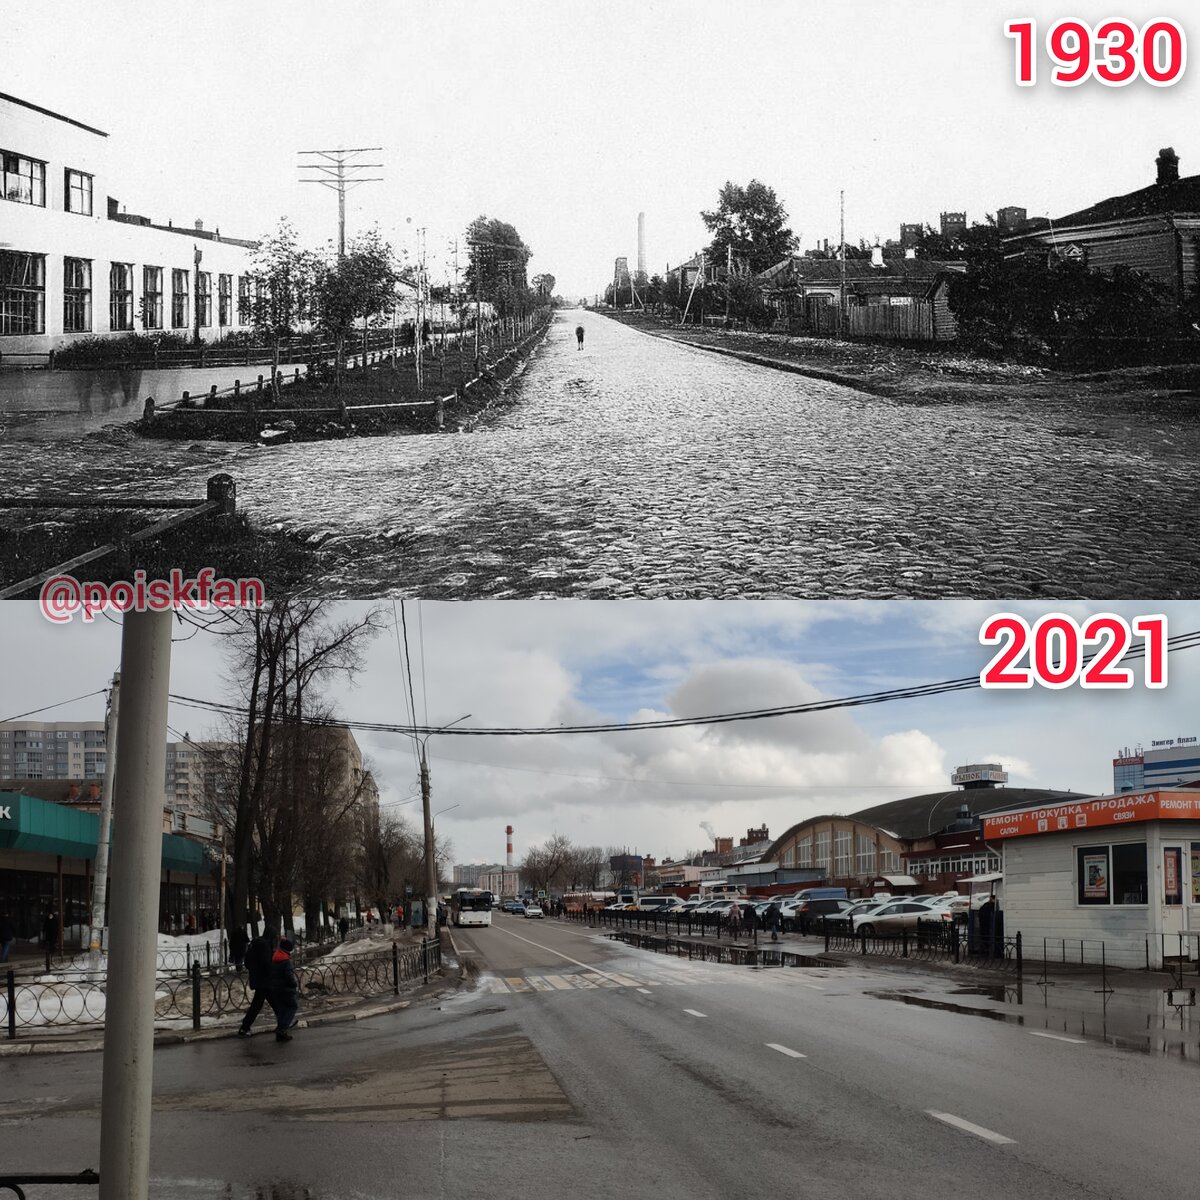 Добрый день, друзья.
Новый фотокаллаж, улица Комсомольская. Верхнее фото сделано в 1930 года. Слева на месте современного магазина Перекресток, стоит здание Фабрики Кухни.